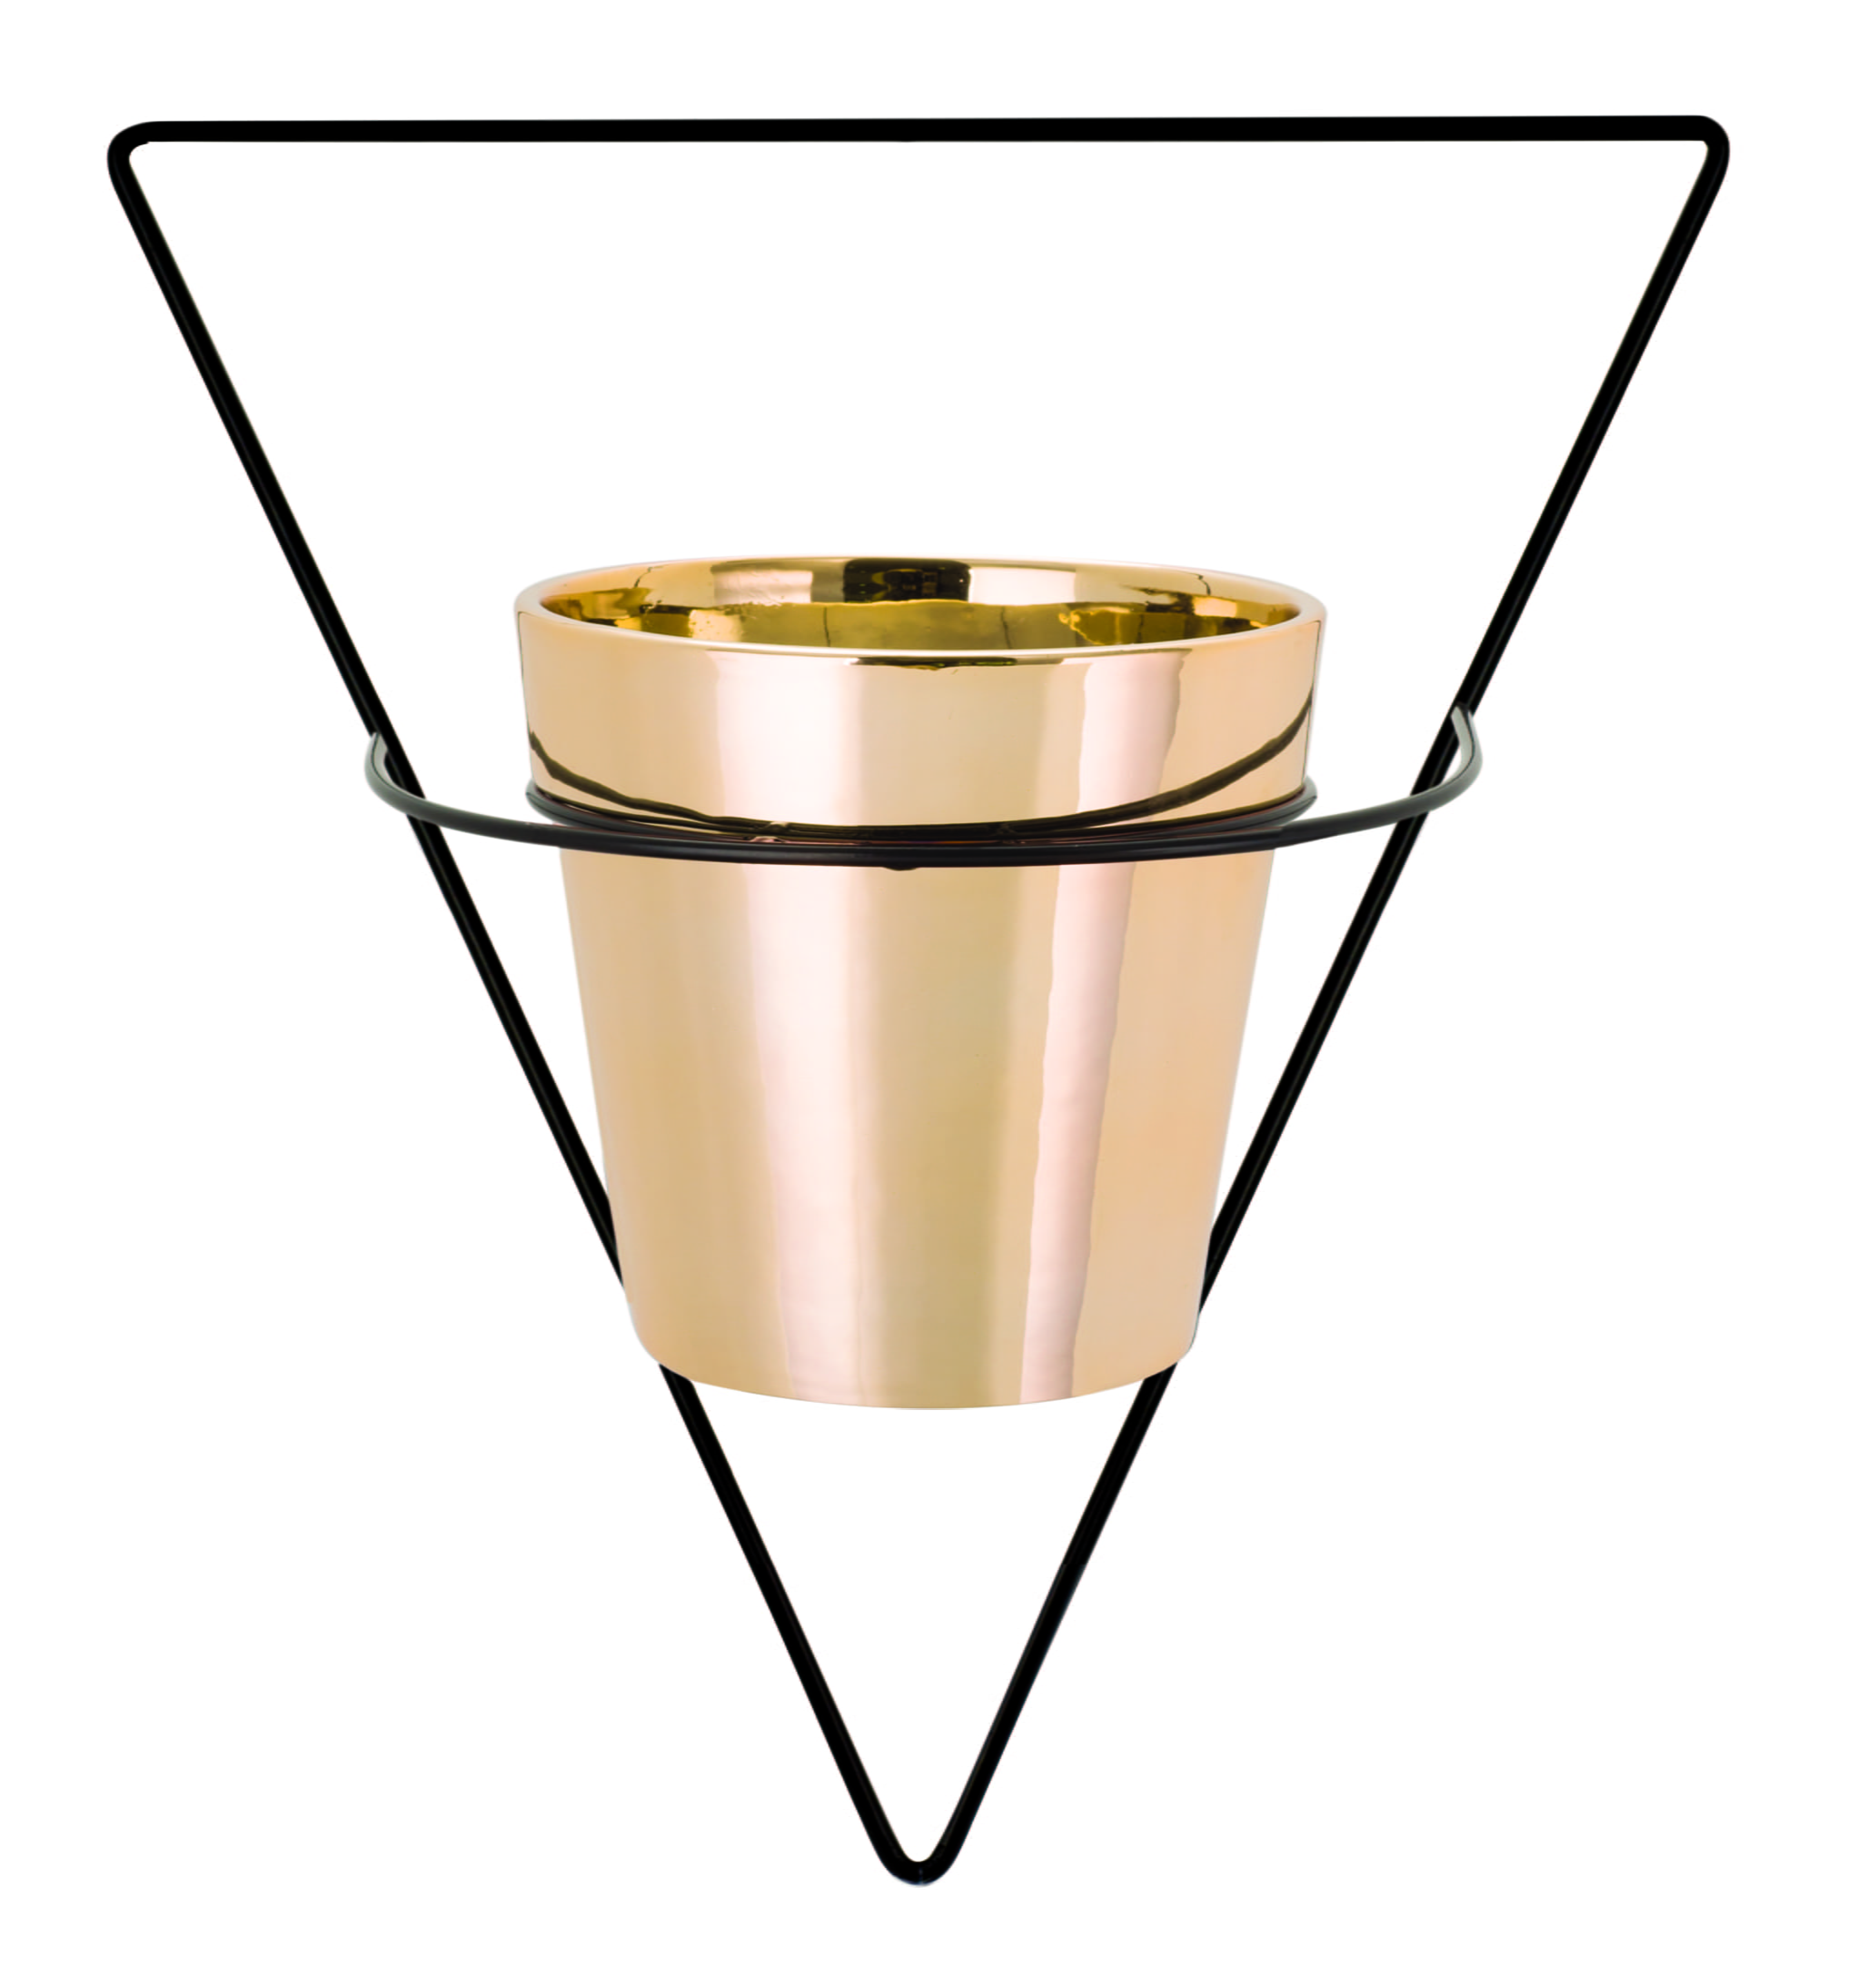 Triângulo Invertido - Vaso com Suporte de Parede